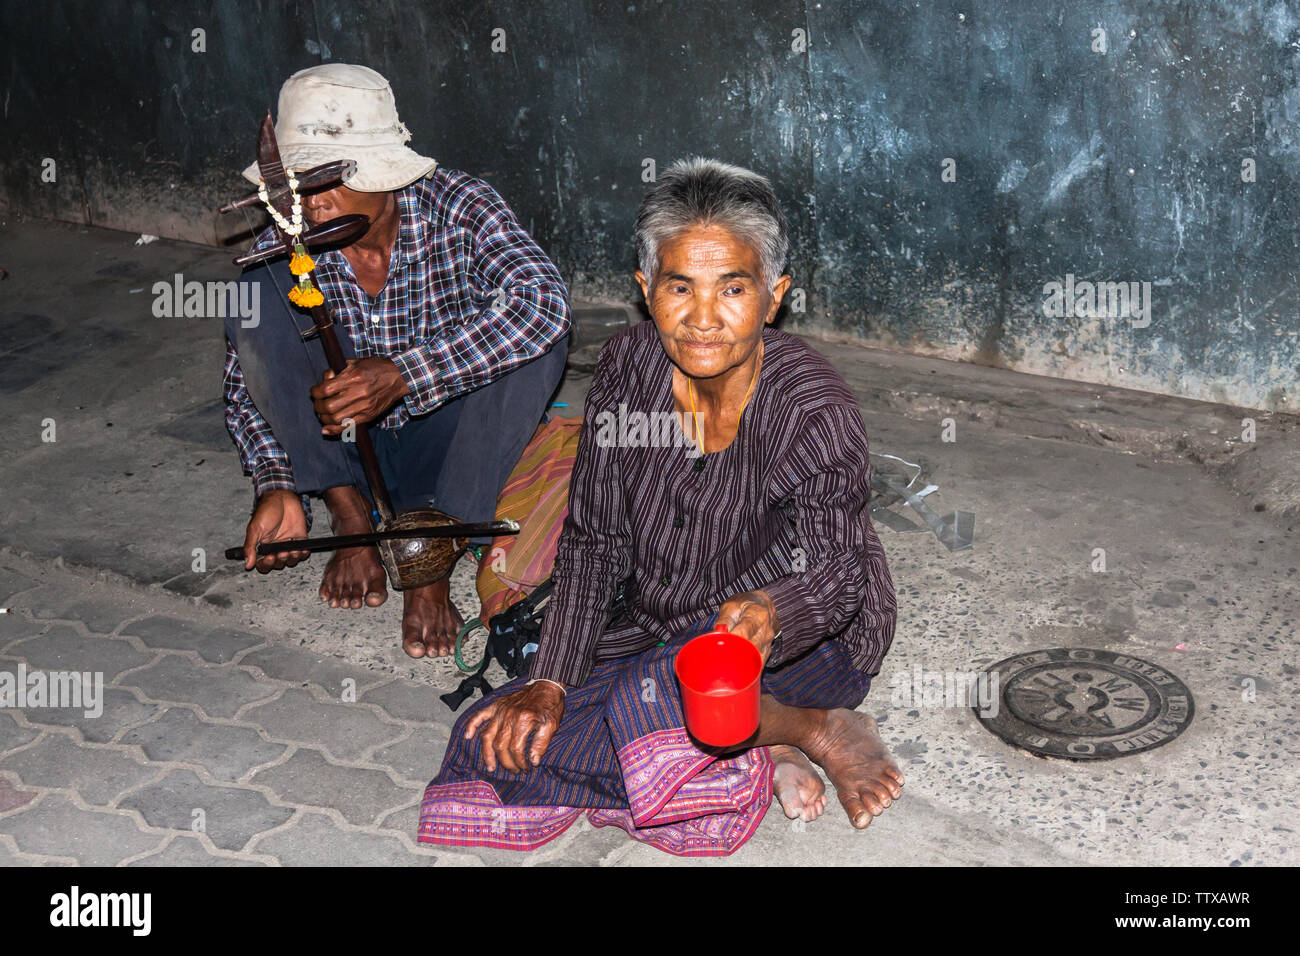 Deux personnes adultes la mendicité pour l'argent ou de la nourriture, le mâle joue vu sam sai, un instrument à cordes traditionnel thaïlandais. Bangkok Banque D'Images